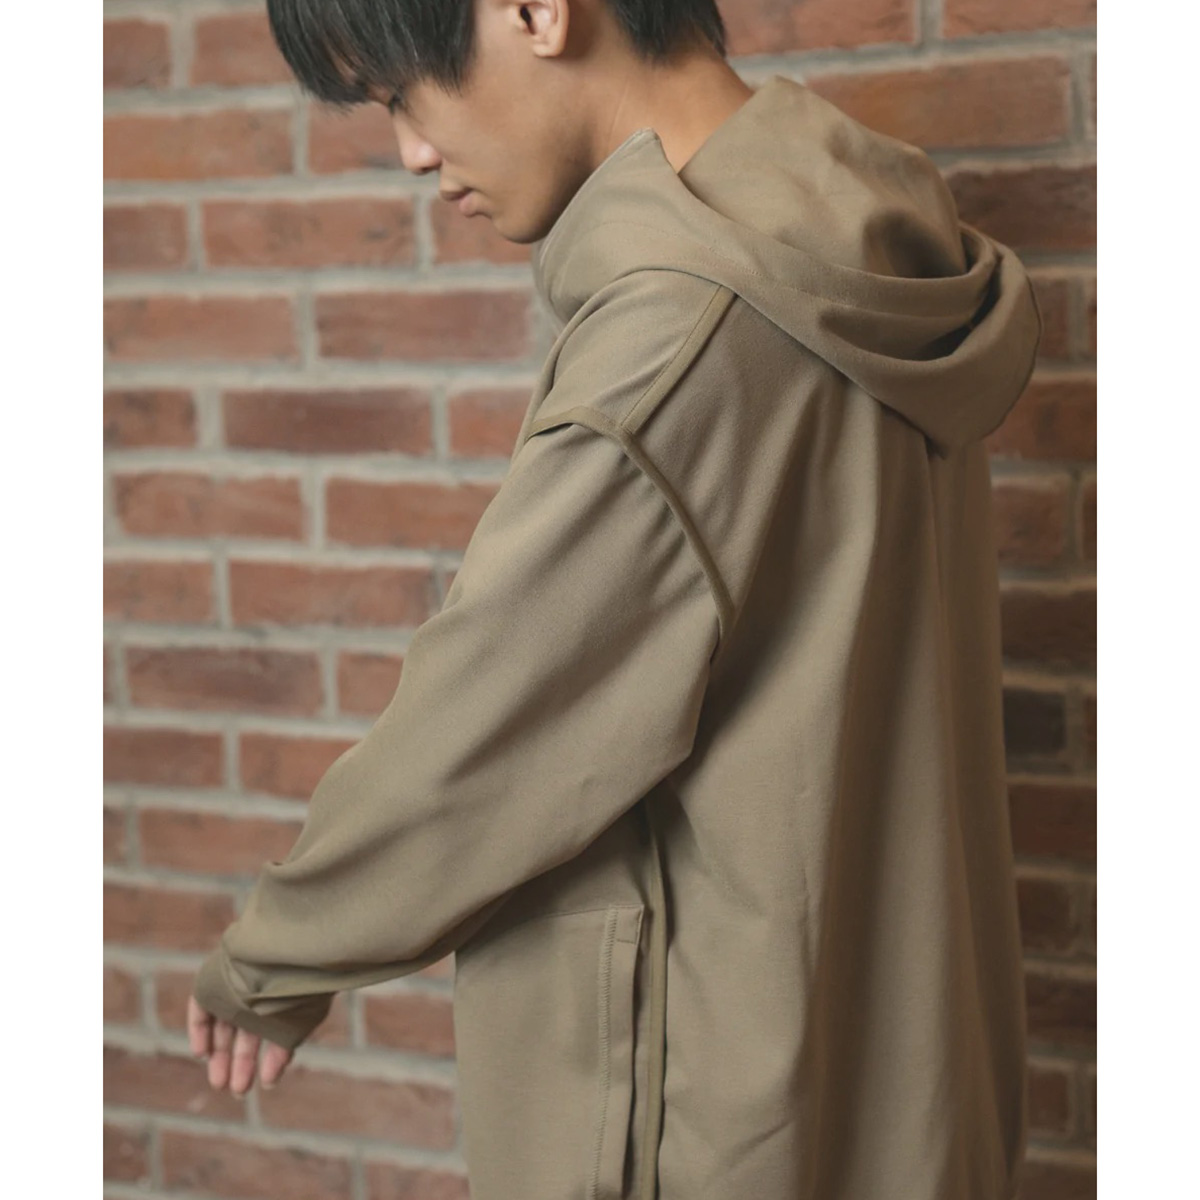 感覚過敏の課題解決の1つとして、加藤さんが立ち上げたアパレルブランド《KANKAKU FACTORY》の服（上写真で着用）は縫い目外側・タグなしをコンセプトにしている。提供：株式会社クリスタルロード 感覚過敏研究所